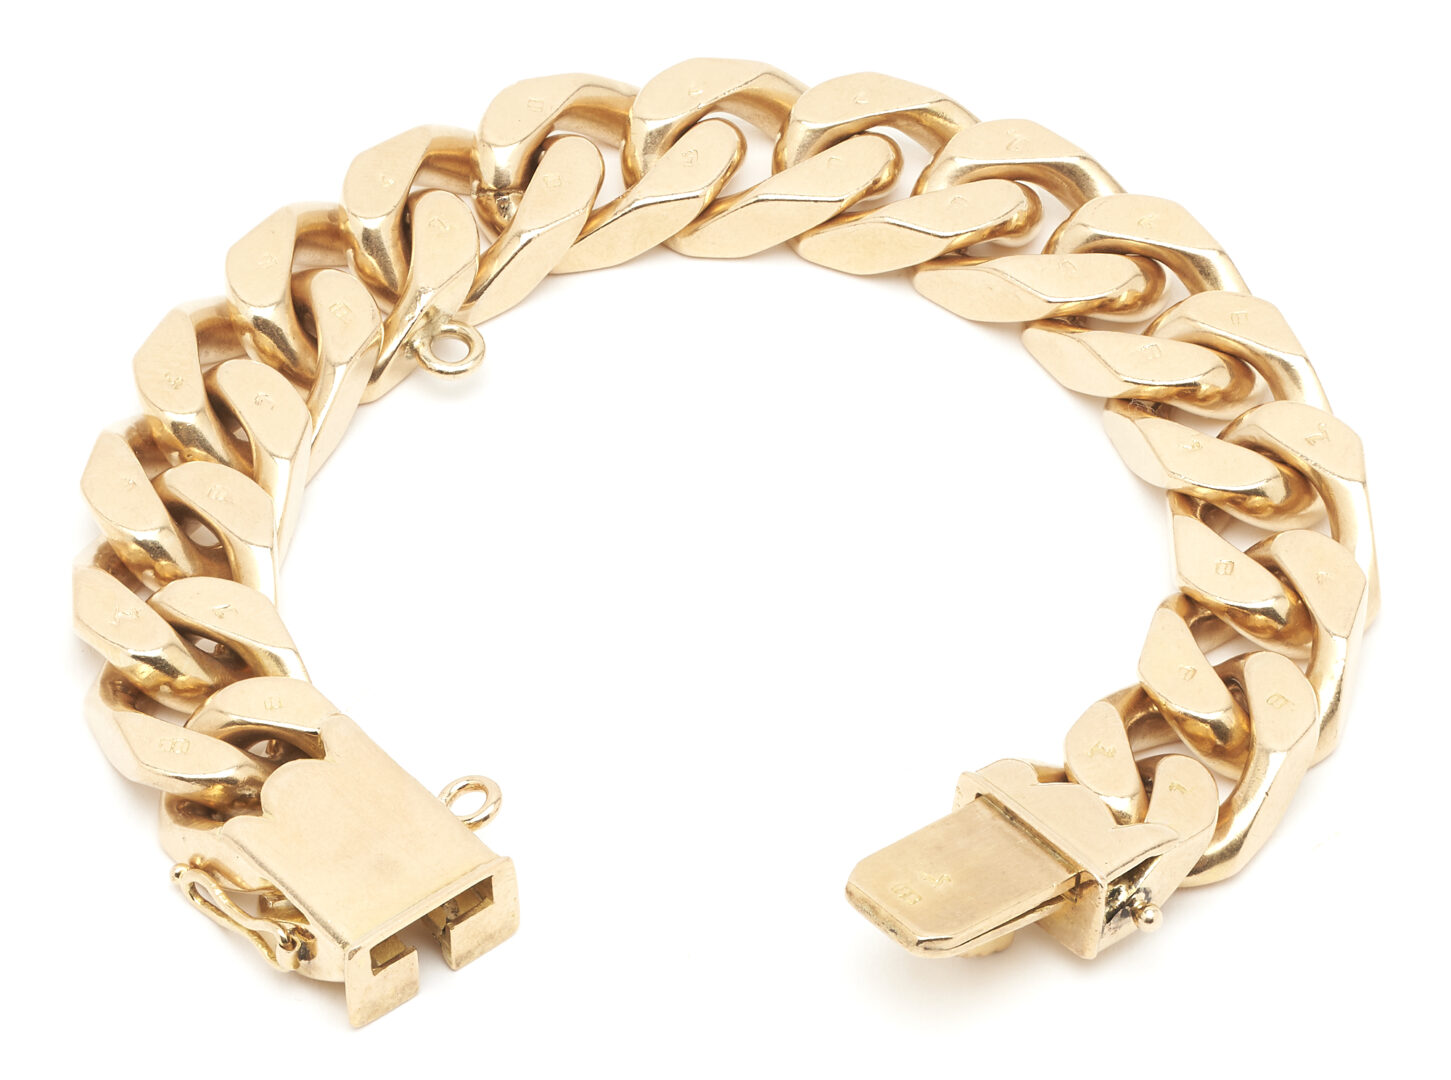 Lot 28: 18K Gold Men's Flat Curb Link Bracelet